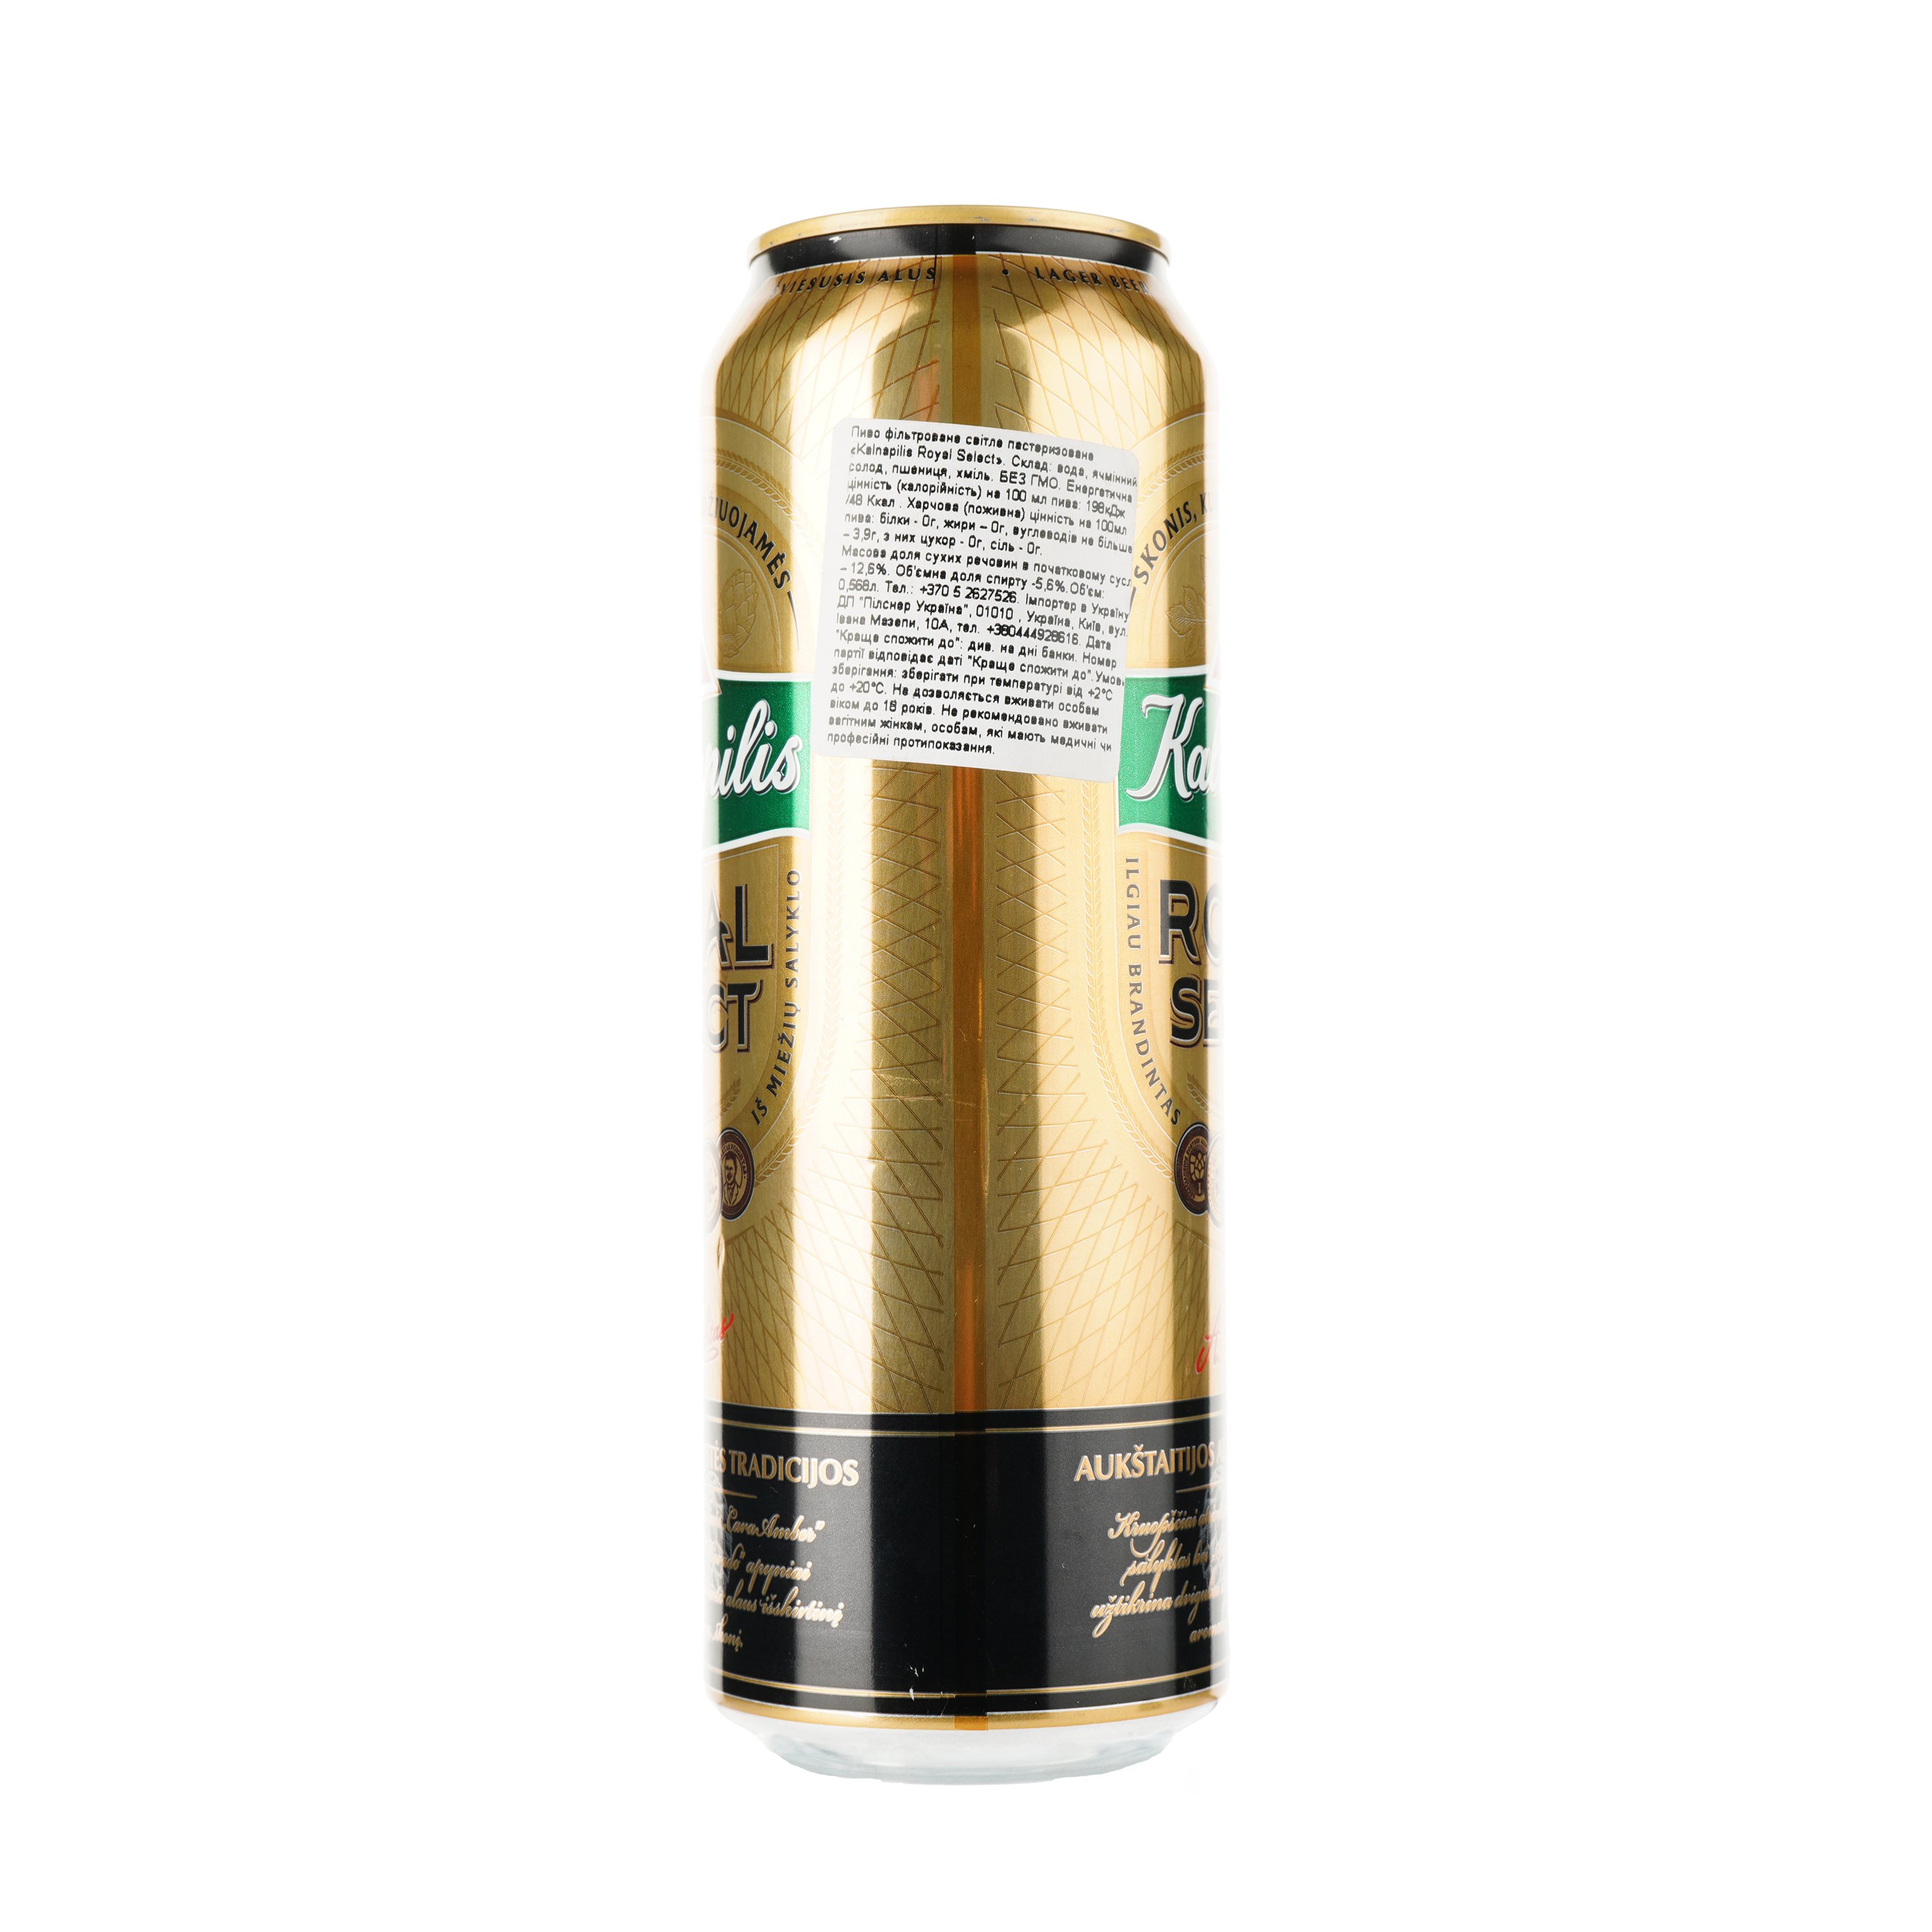 Пиво Kalnapilis Royal Select светлое, 5.6%, ж/б, 0.568 л - фото 2